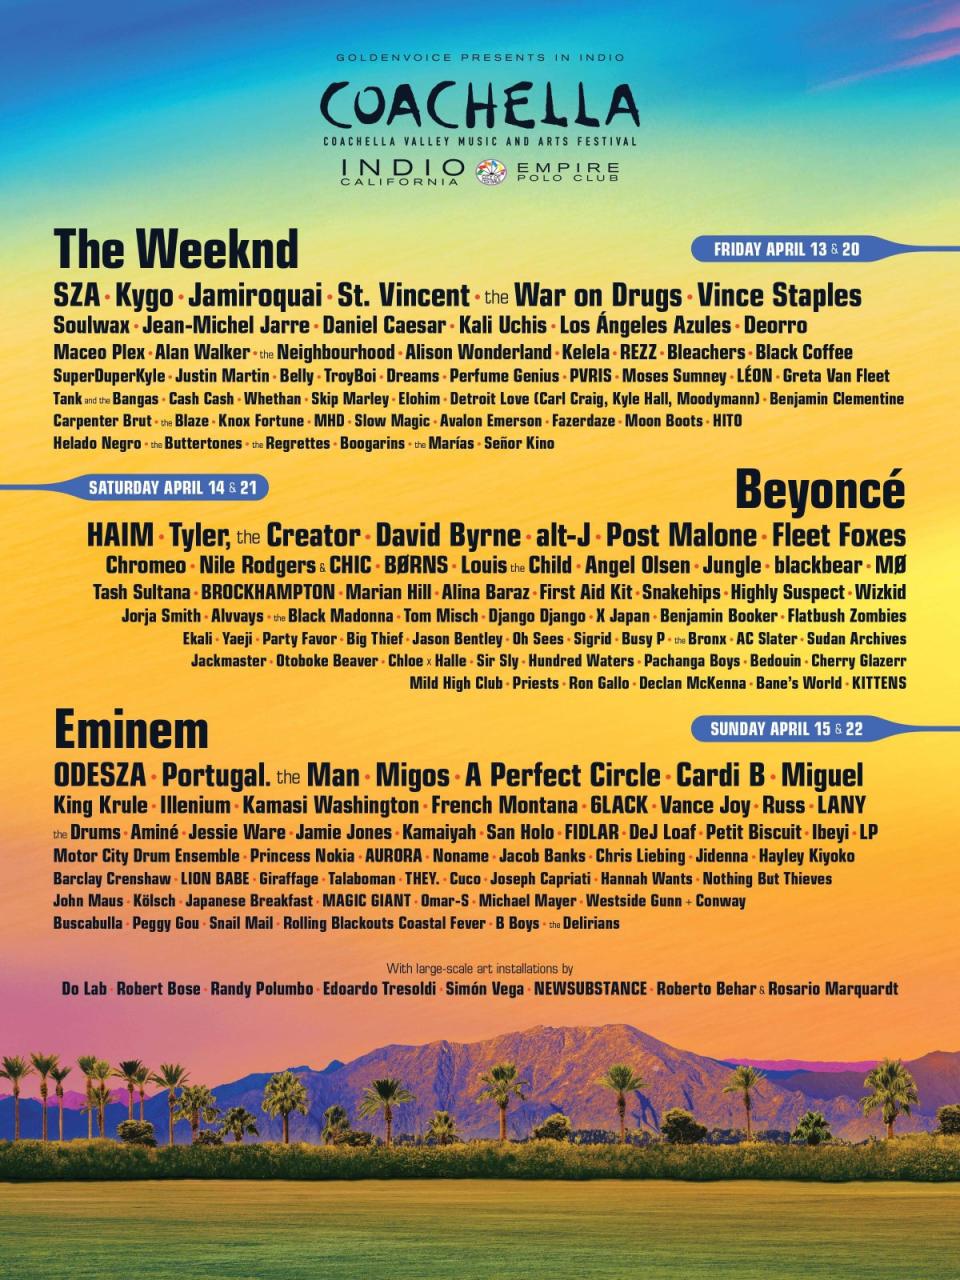 Coachella 2018 poster (Coachella.com)